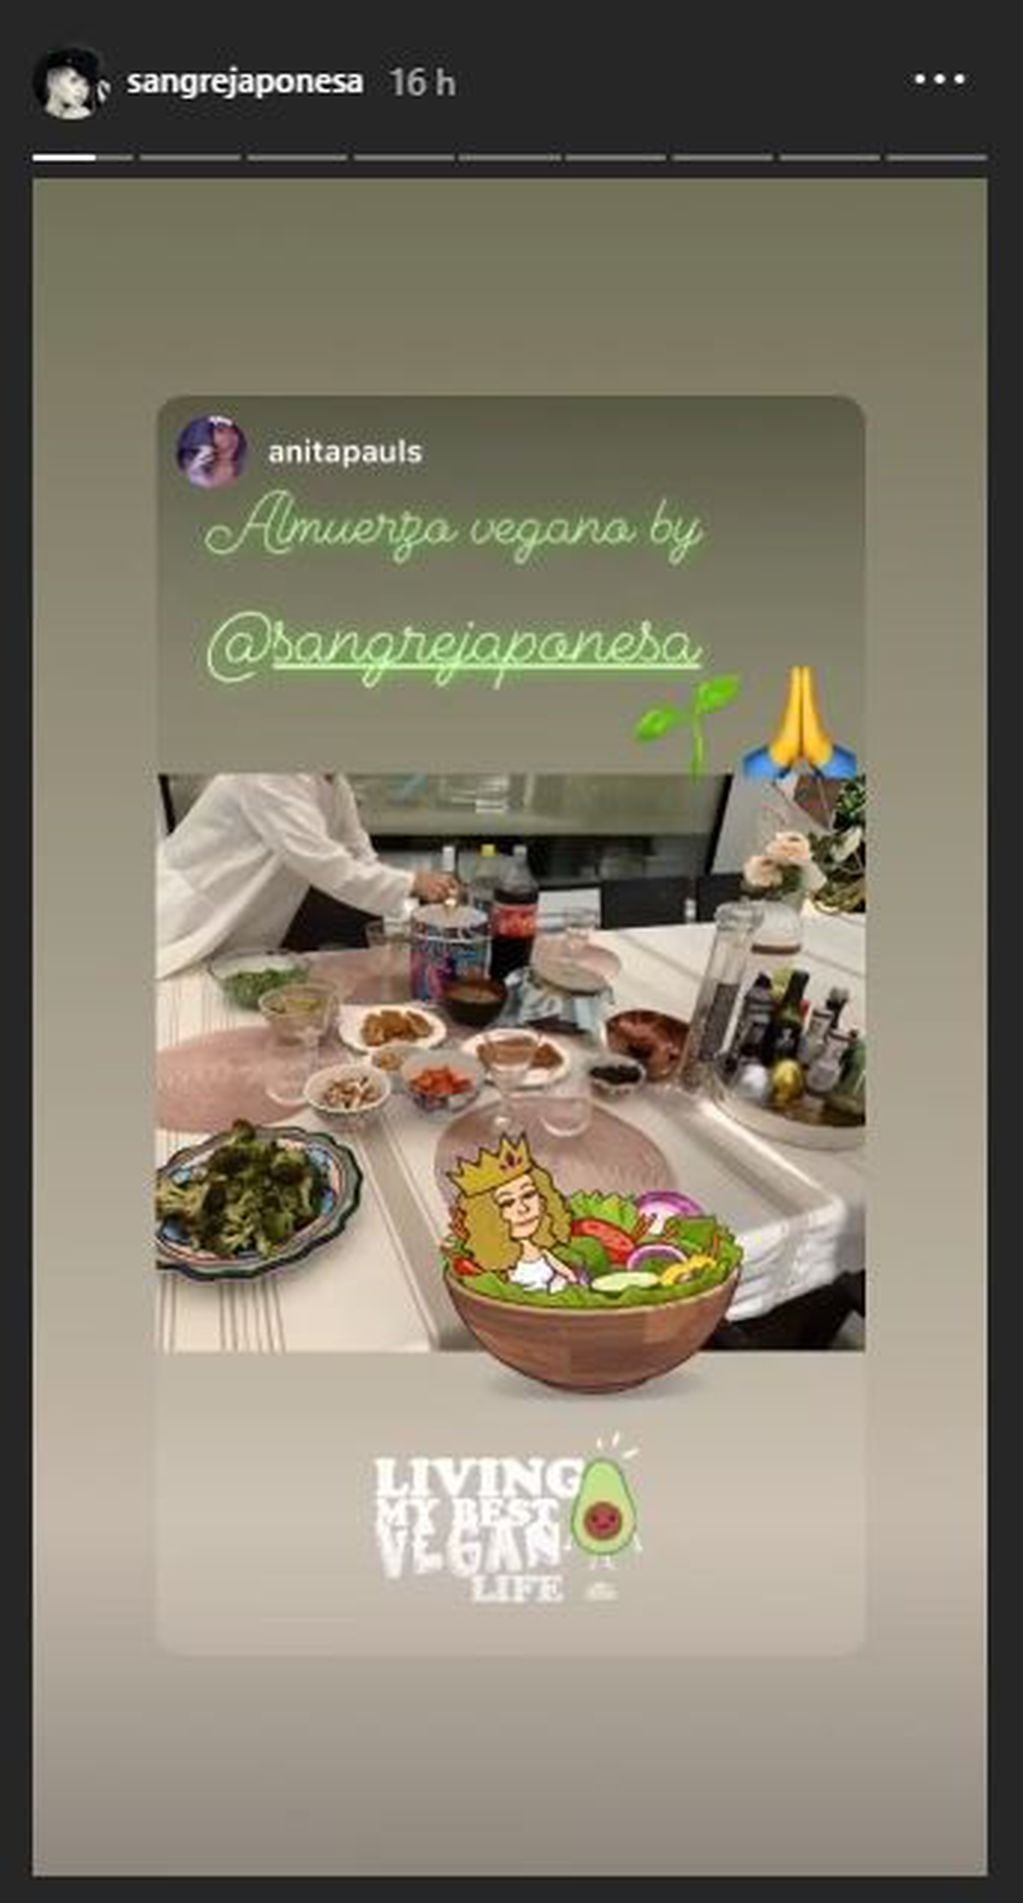 Anita Pauls mostró el almuerzo vegano que preparó la China Suárez